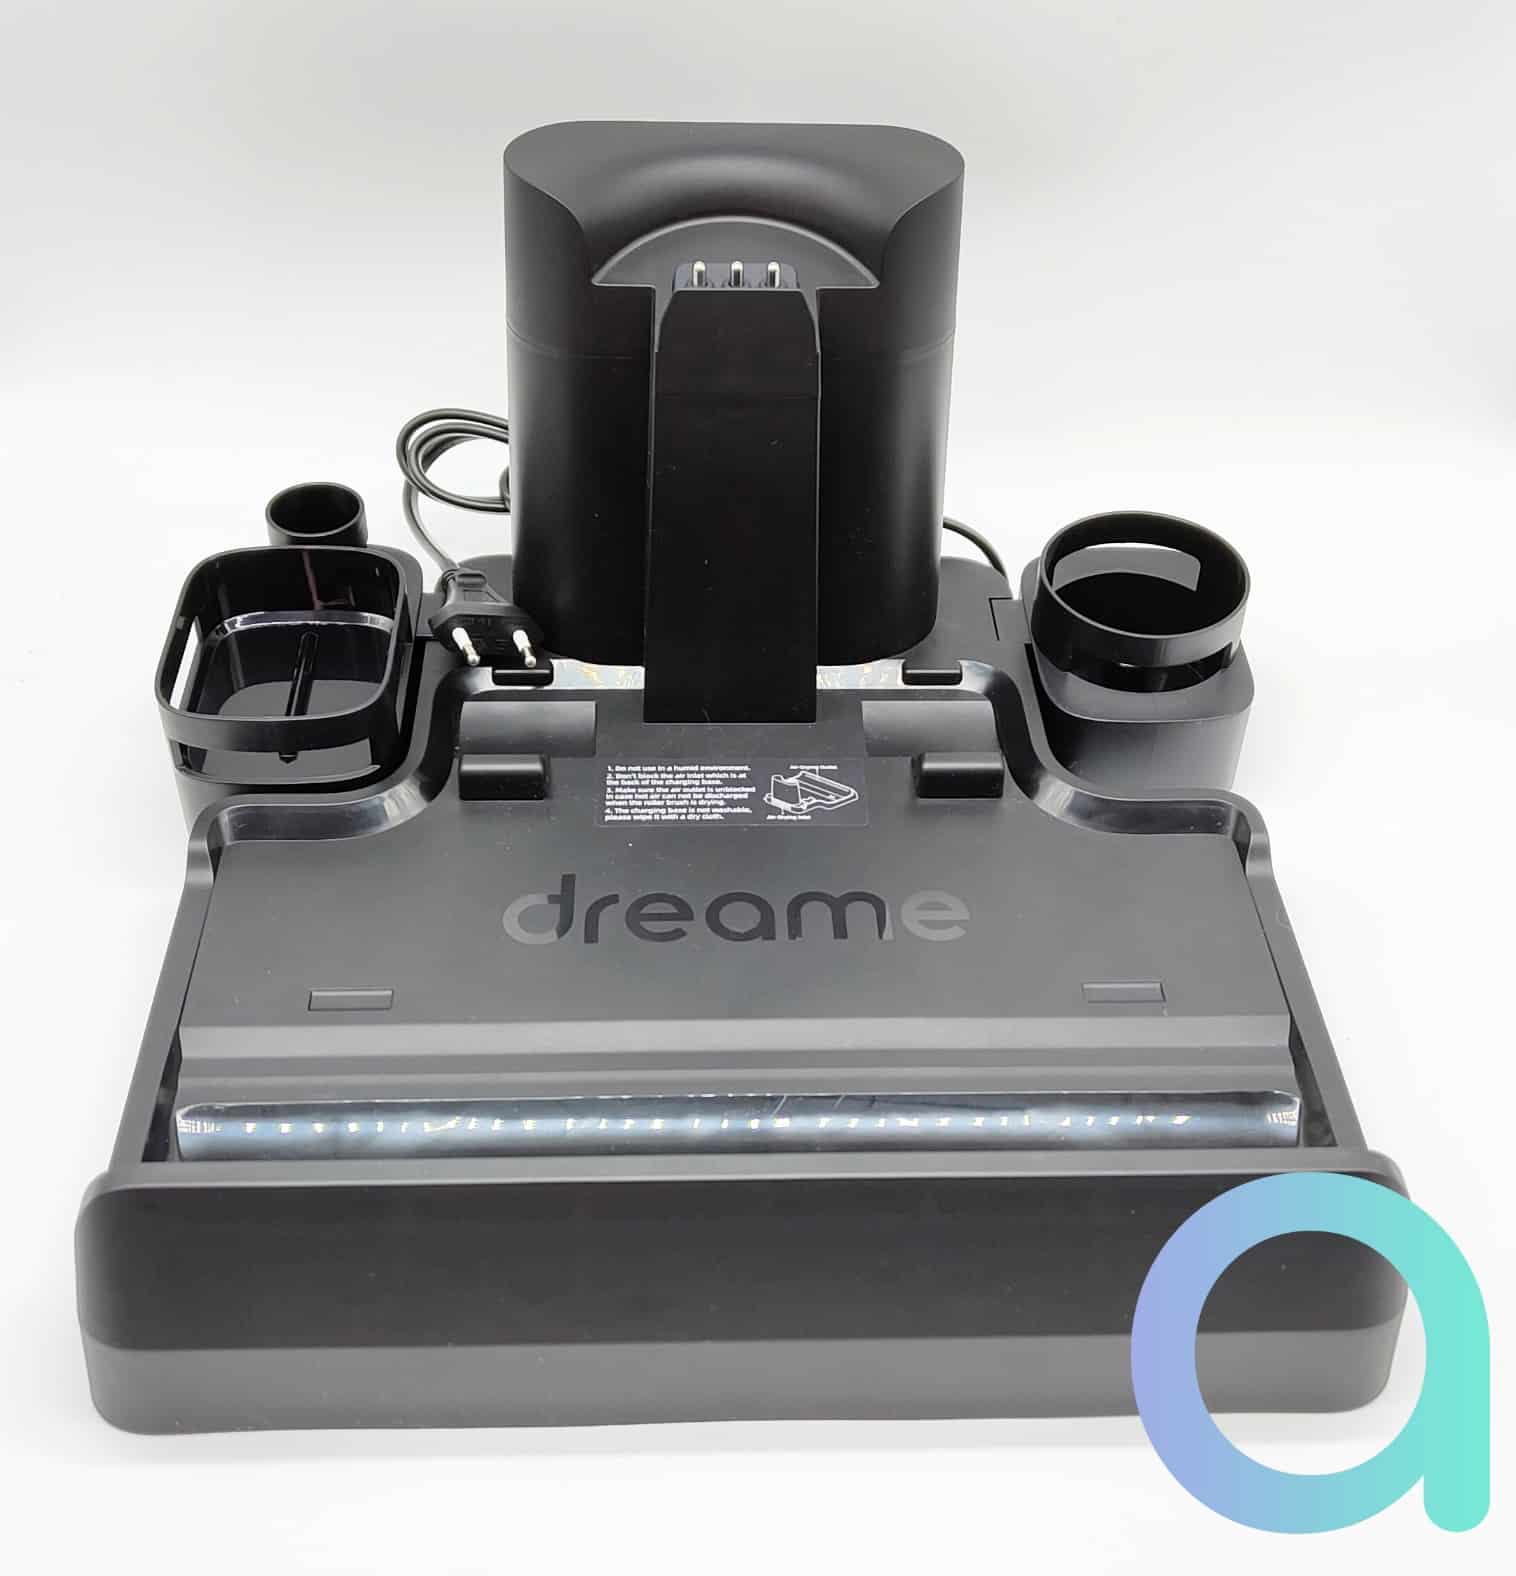 Test Dreame H12 Pro : Nouvelle référence parmi les aspirateurs ?